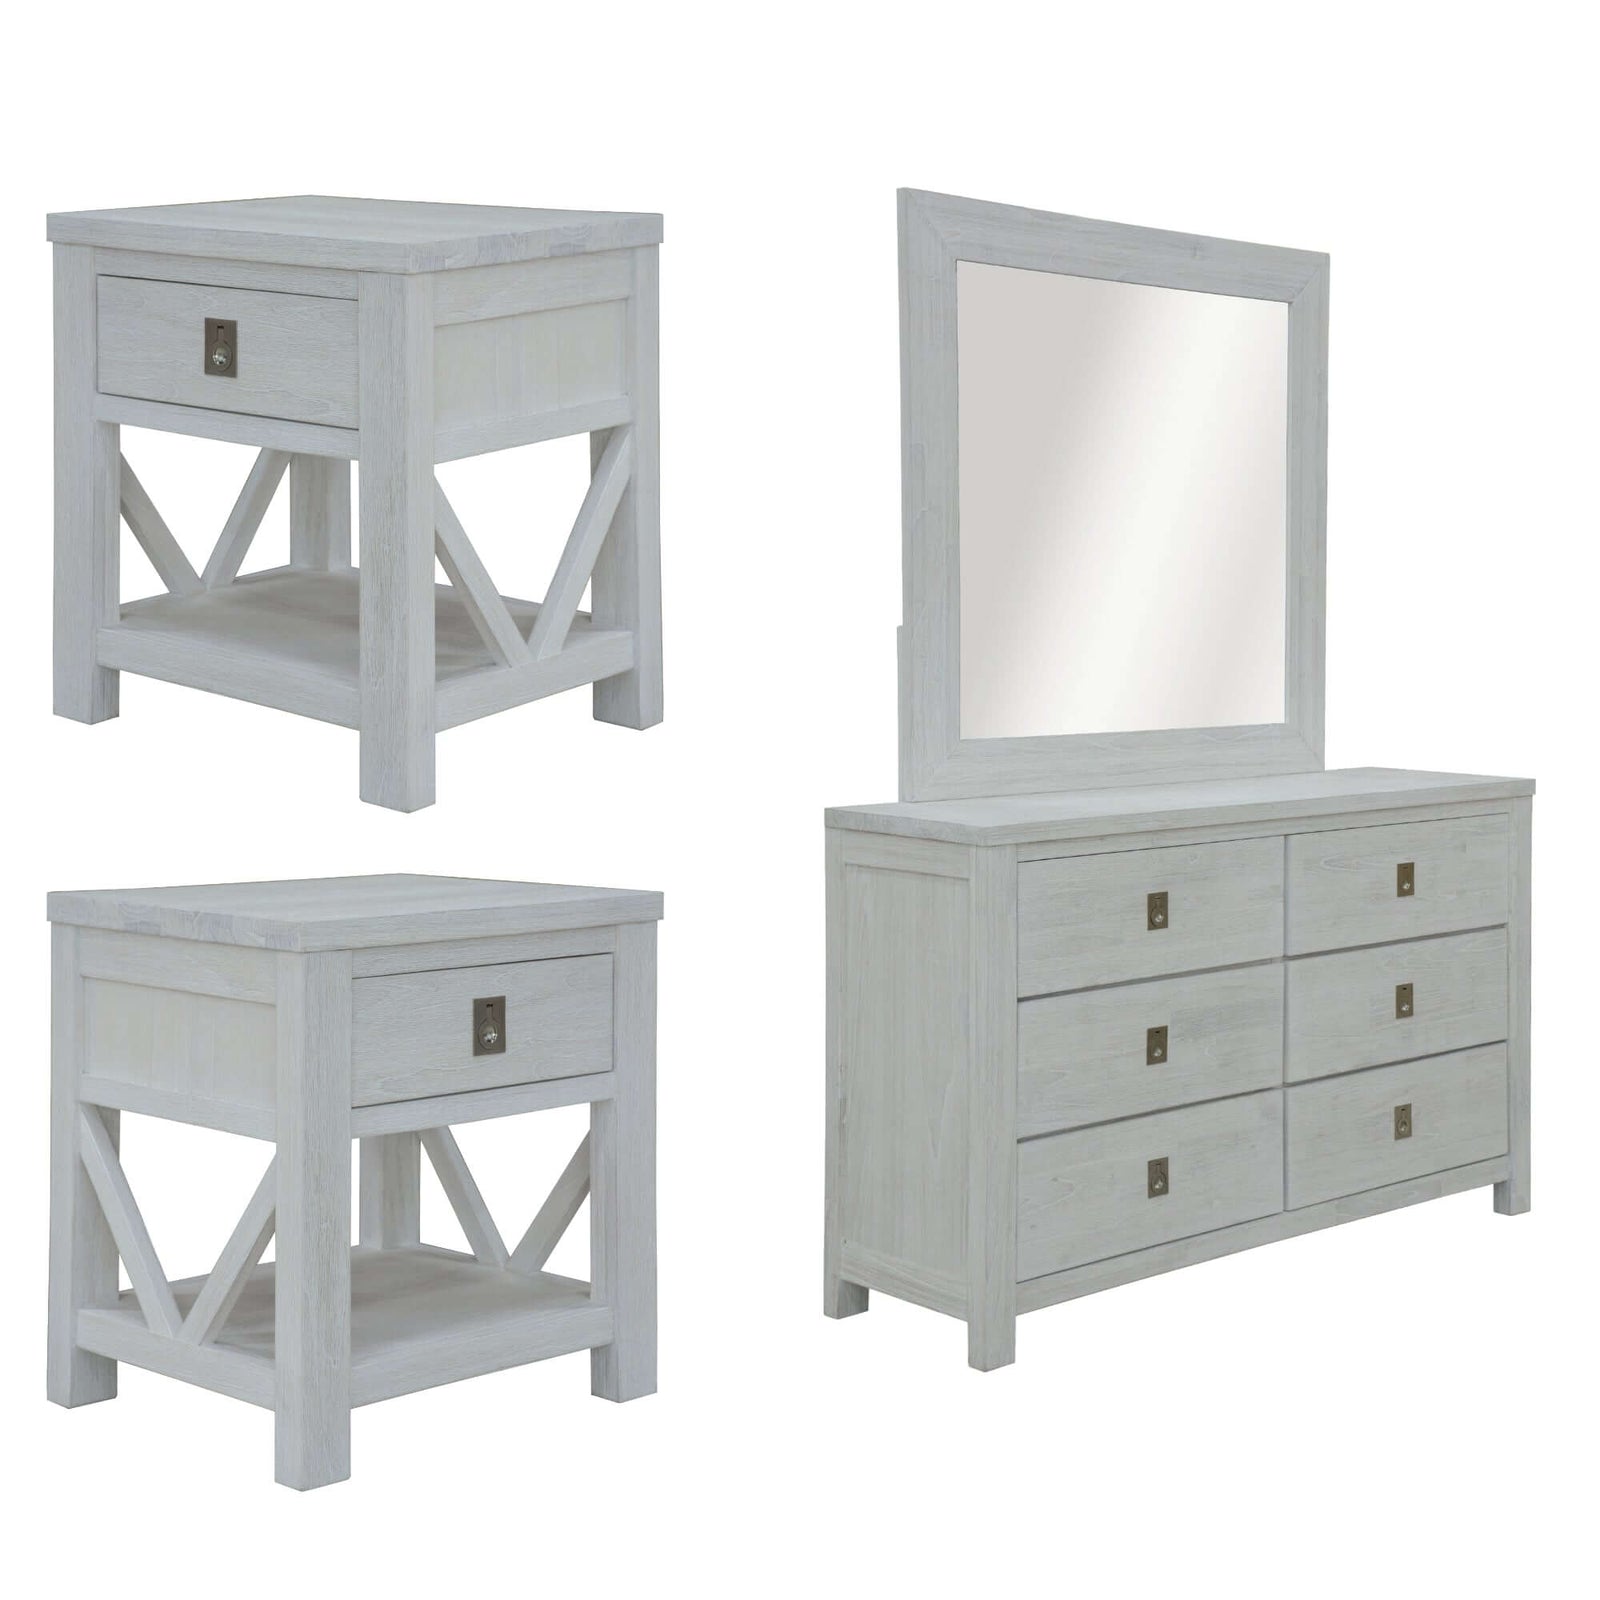 Myer 4pc Set 2 Bedside Dresser Mirror Storage Cabinet Side End Table White Wash-Upinteriors